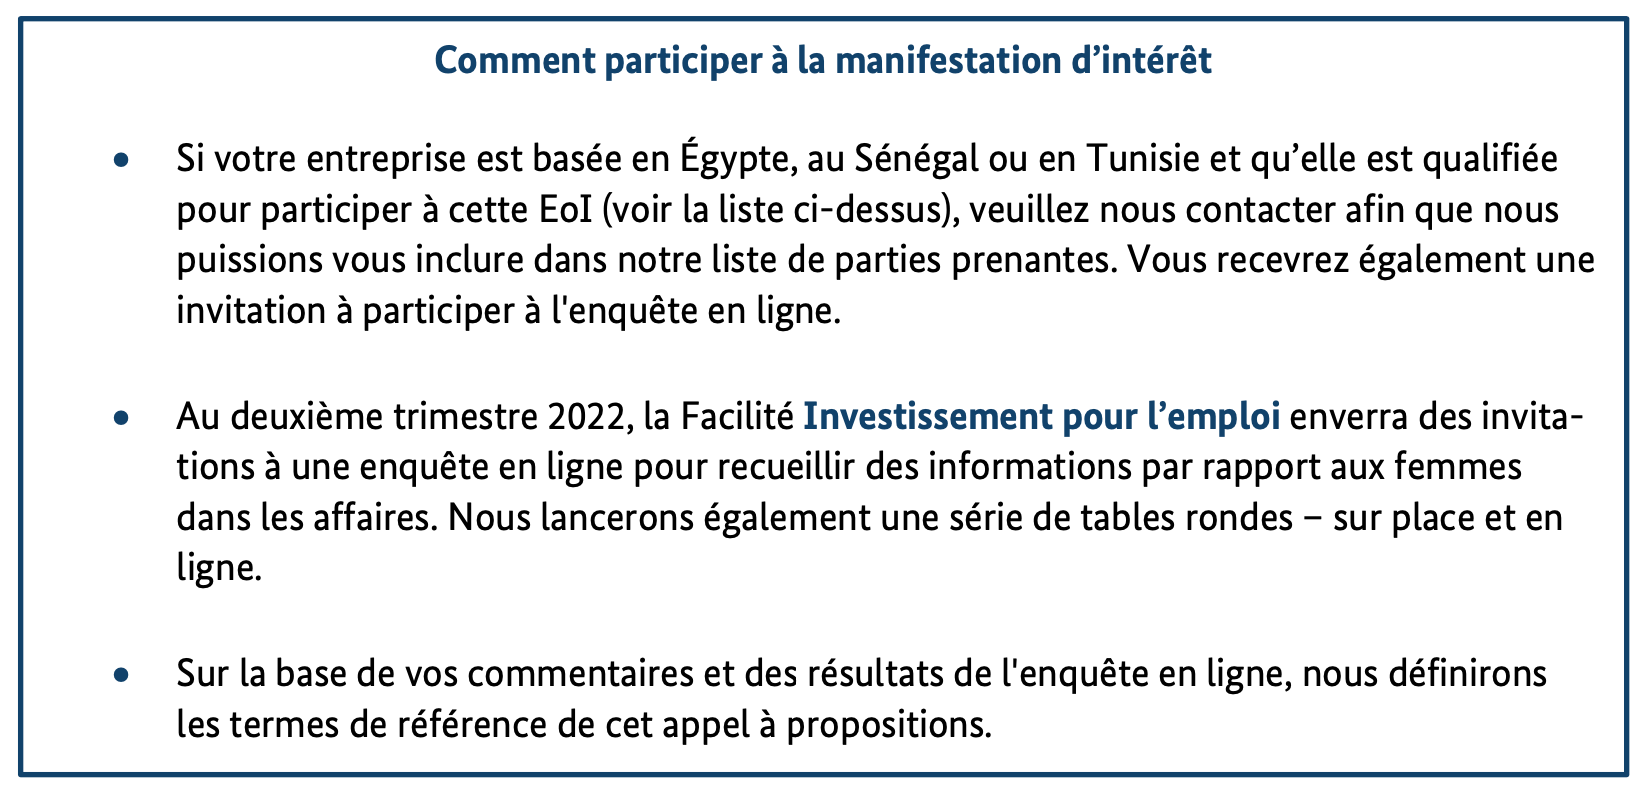 Communiqué de presse : Les femmes dans les affaires : La Facilité Investissements pour l’emploi (IFE) invite les entreprises en Égypte, au Sénégal et en Tunisie à une manifestation d’intérêt